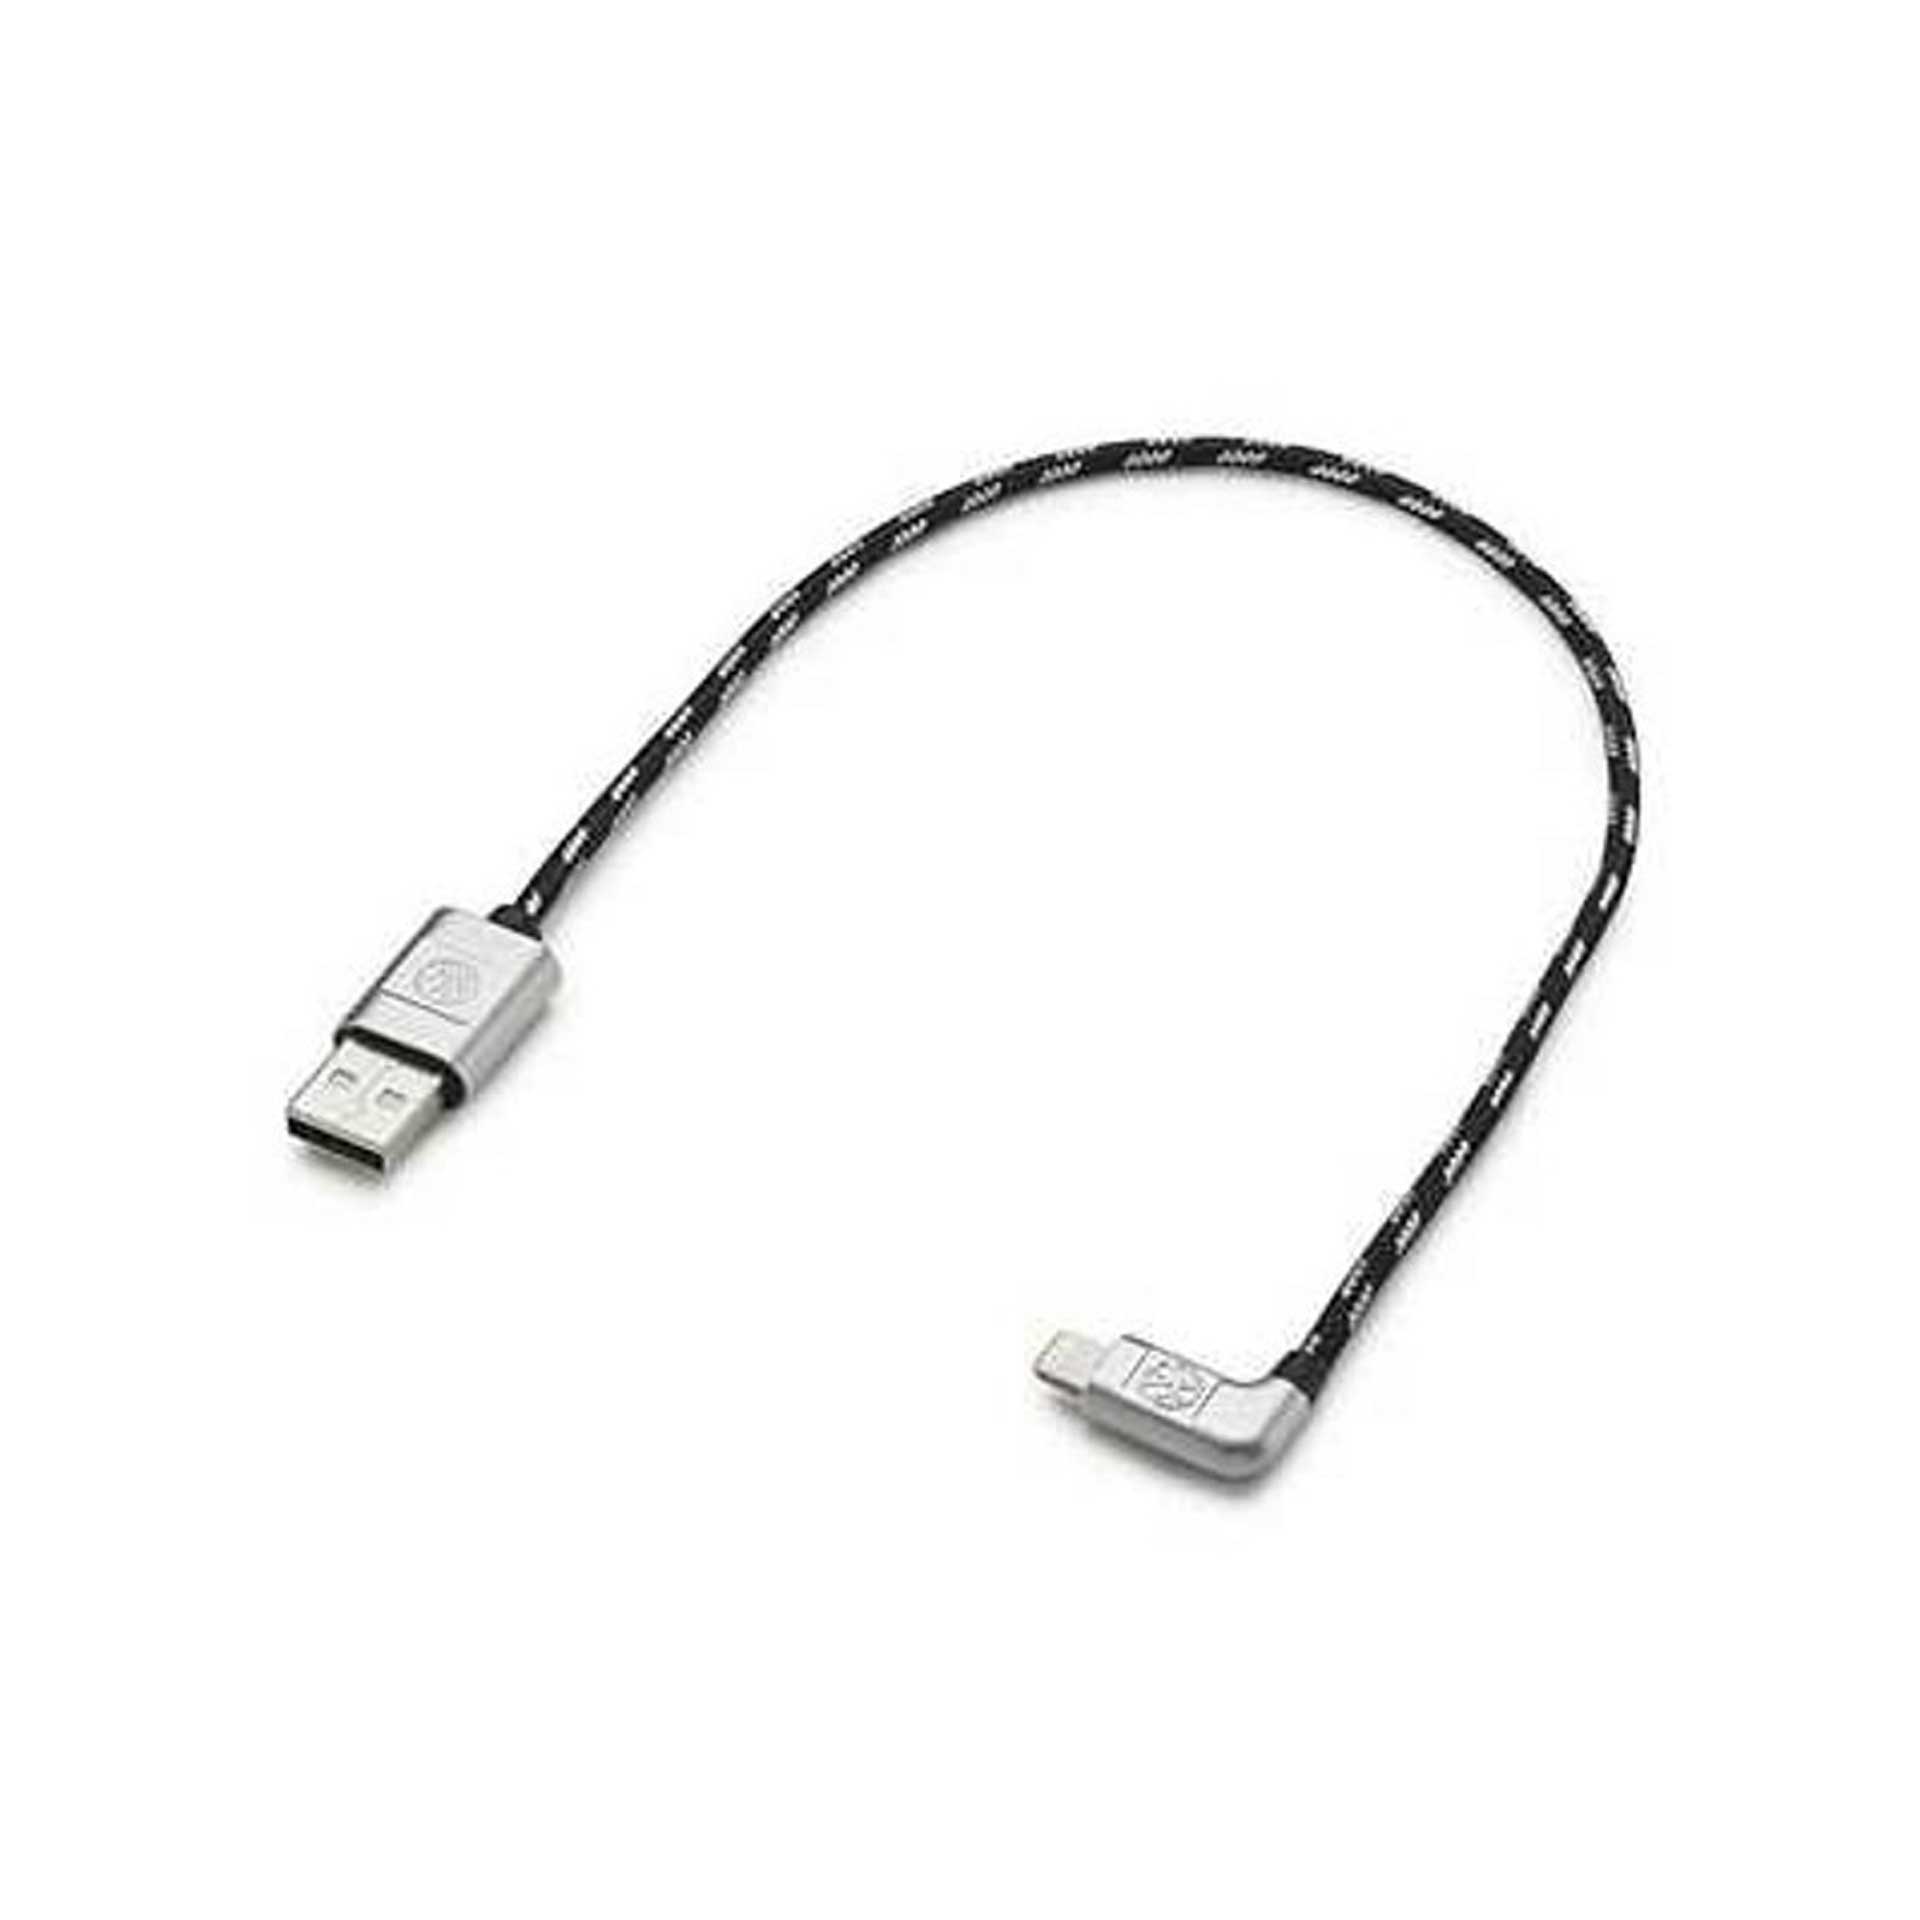 Volkswagen Anschlusskabel Ladekabel USB-A auf Apple Lightning 30 cm 000051446AR